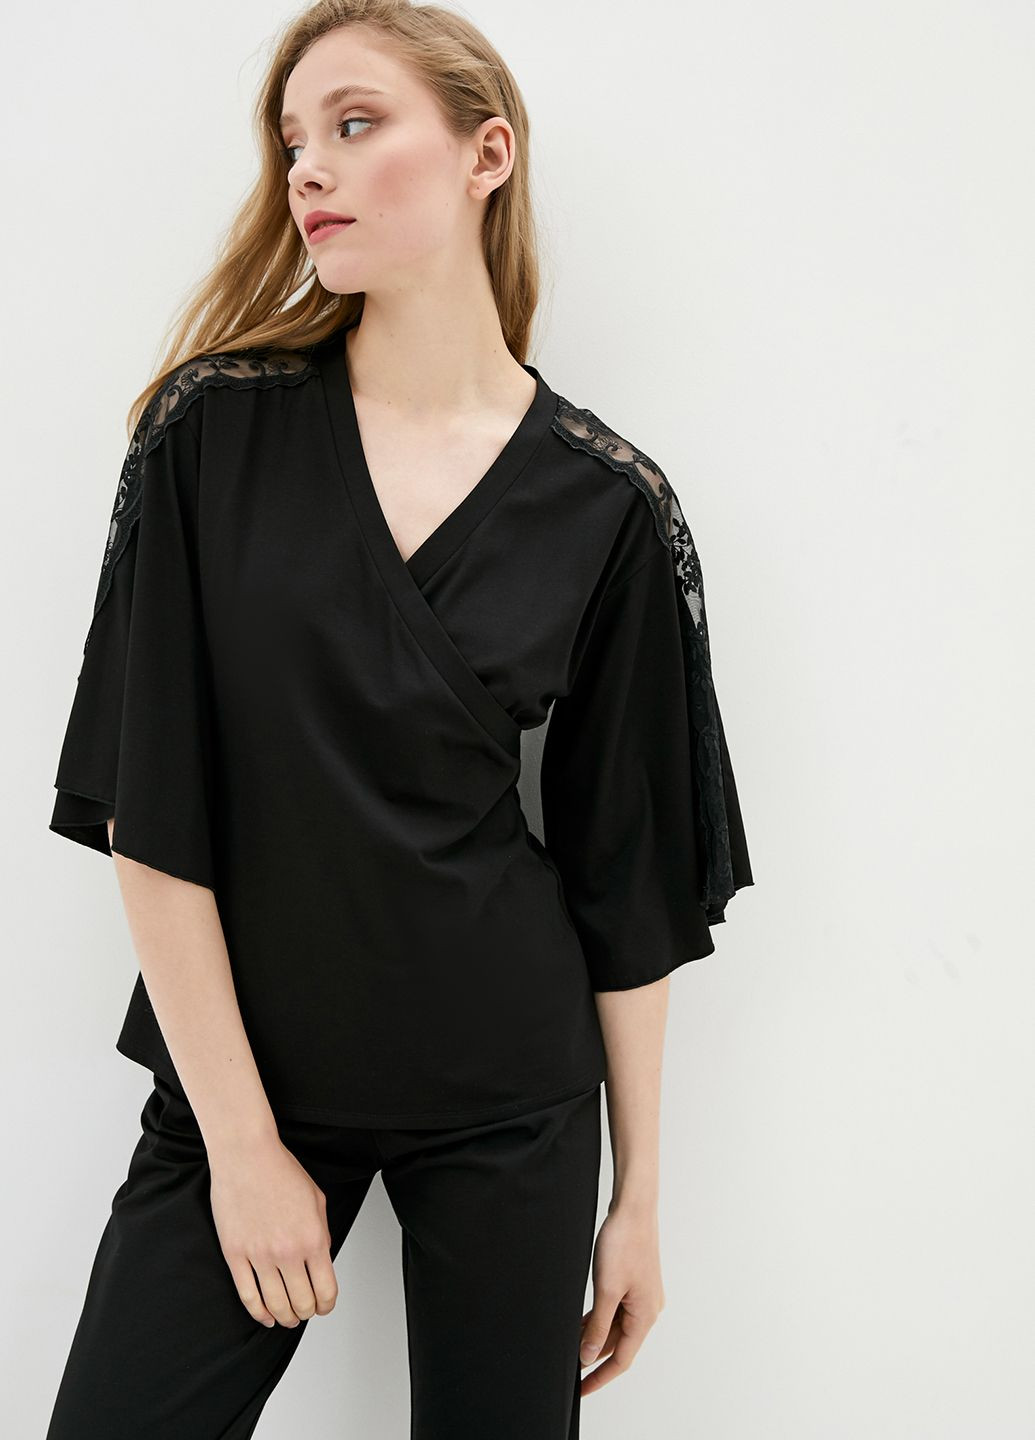 Черная всесезон пижама женская черного цвета с кружевом на рукавах. ORA